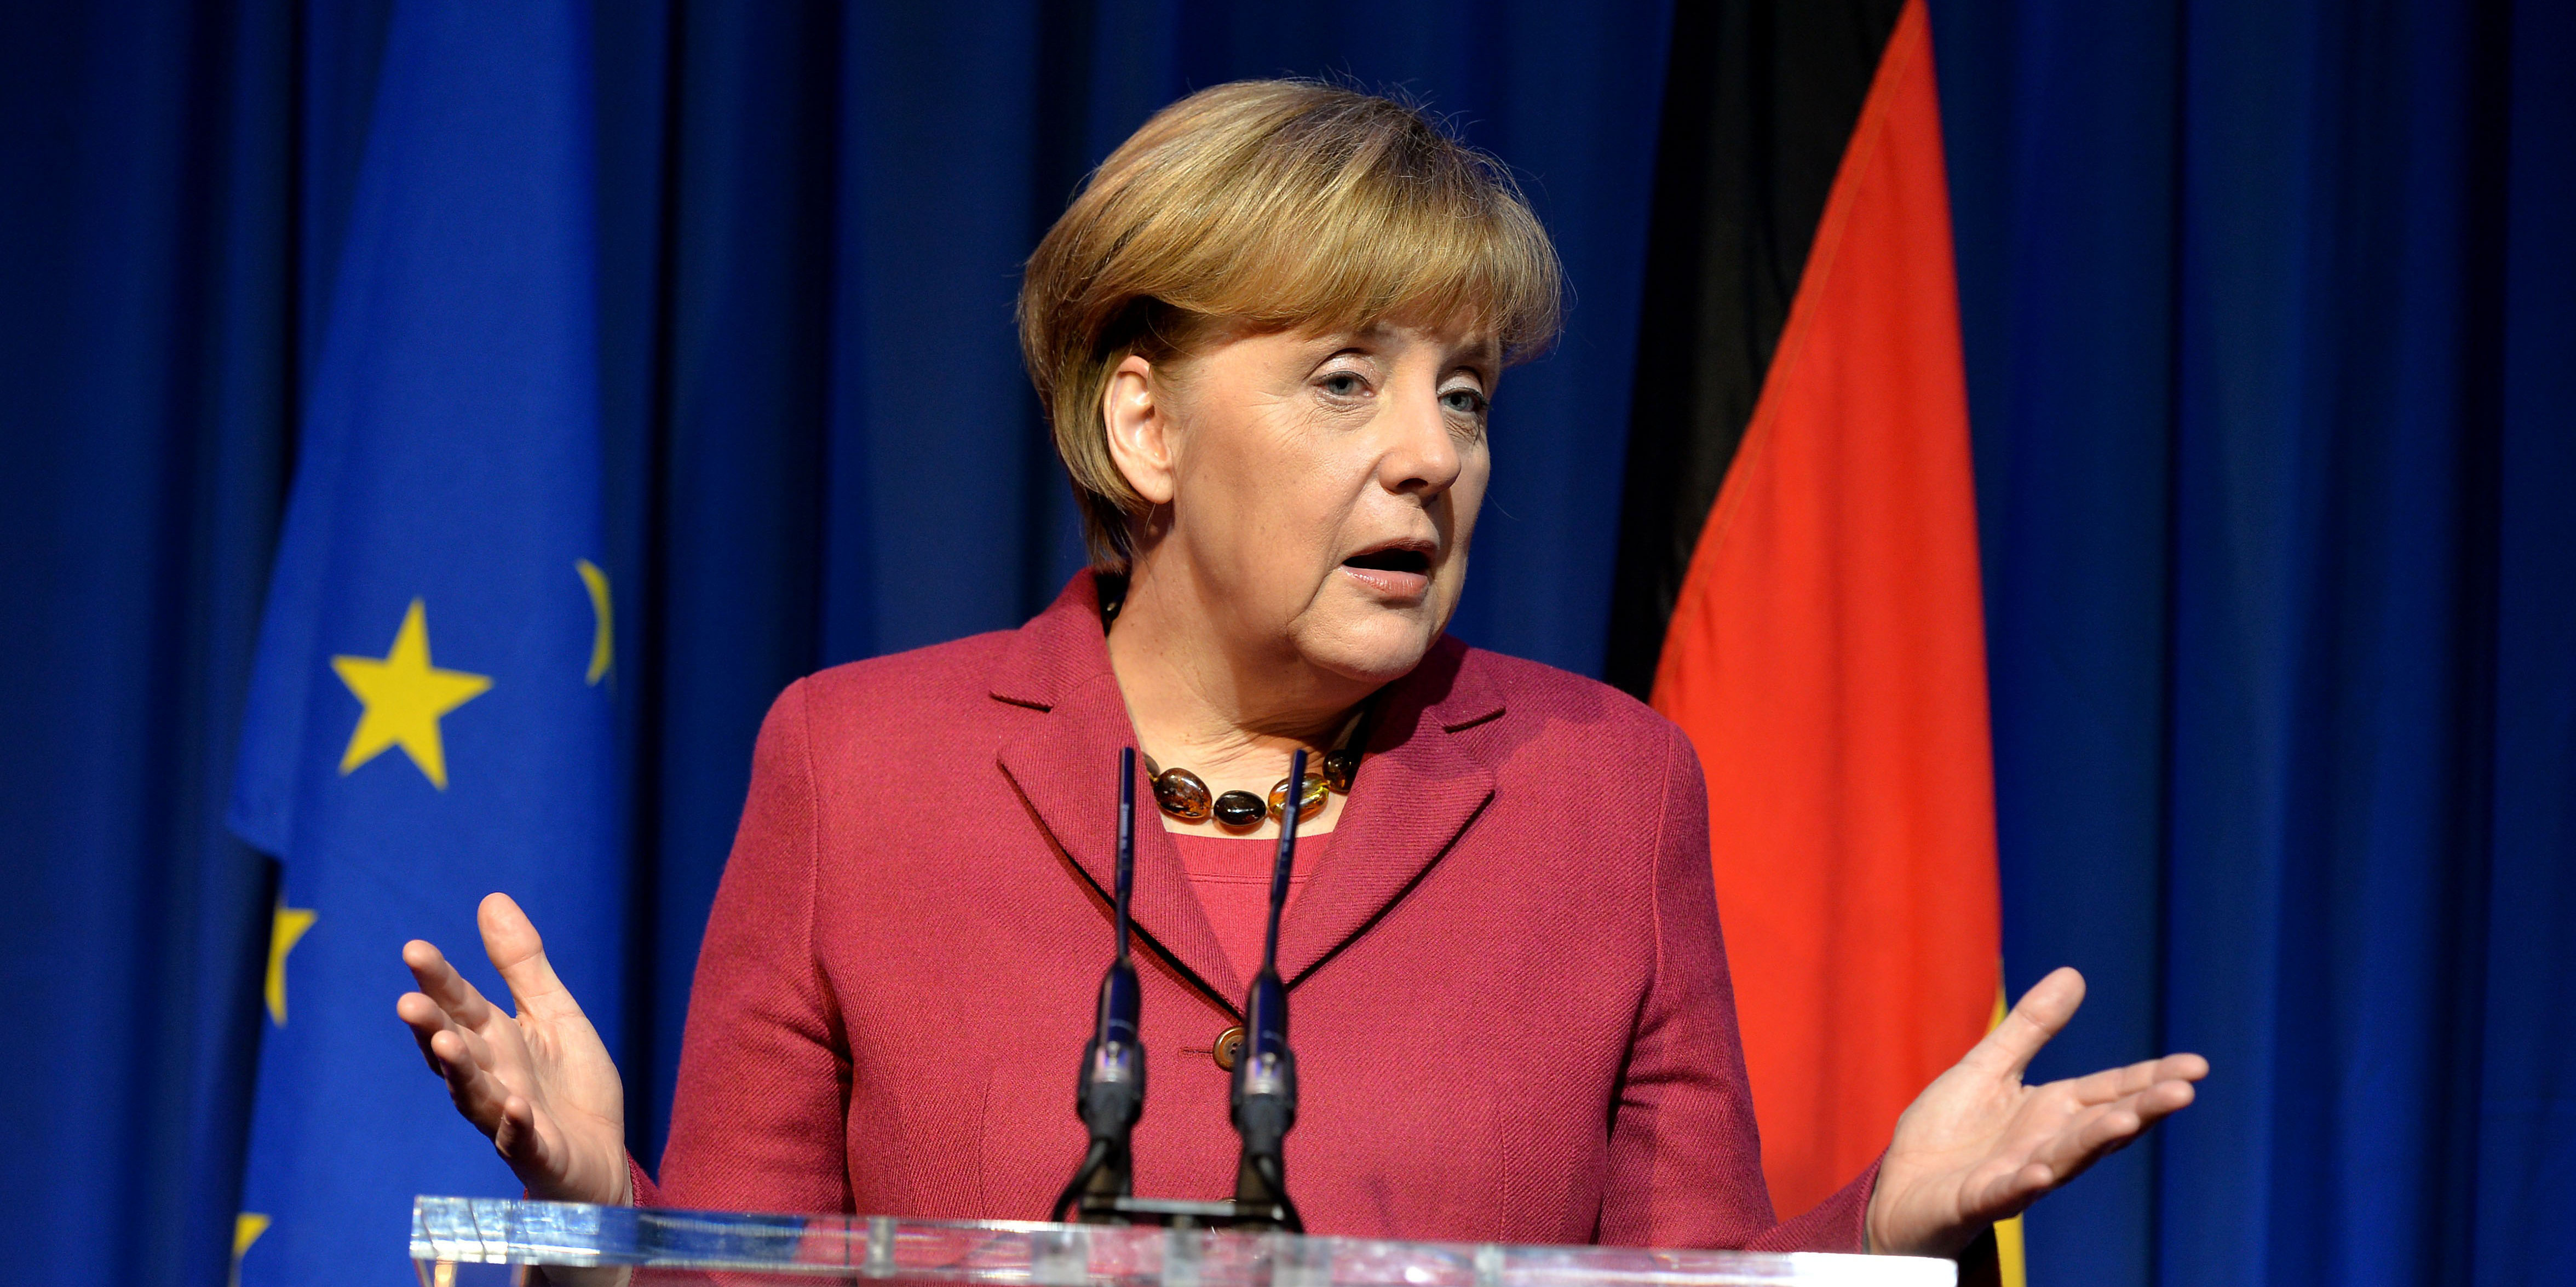 Cén toradh a bheidh ar mhargadh Merkel agus Schulz?